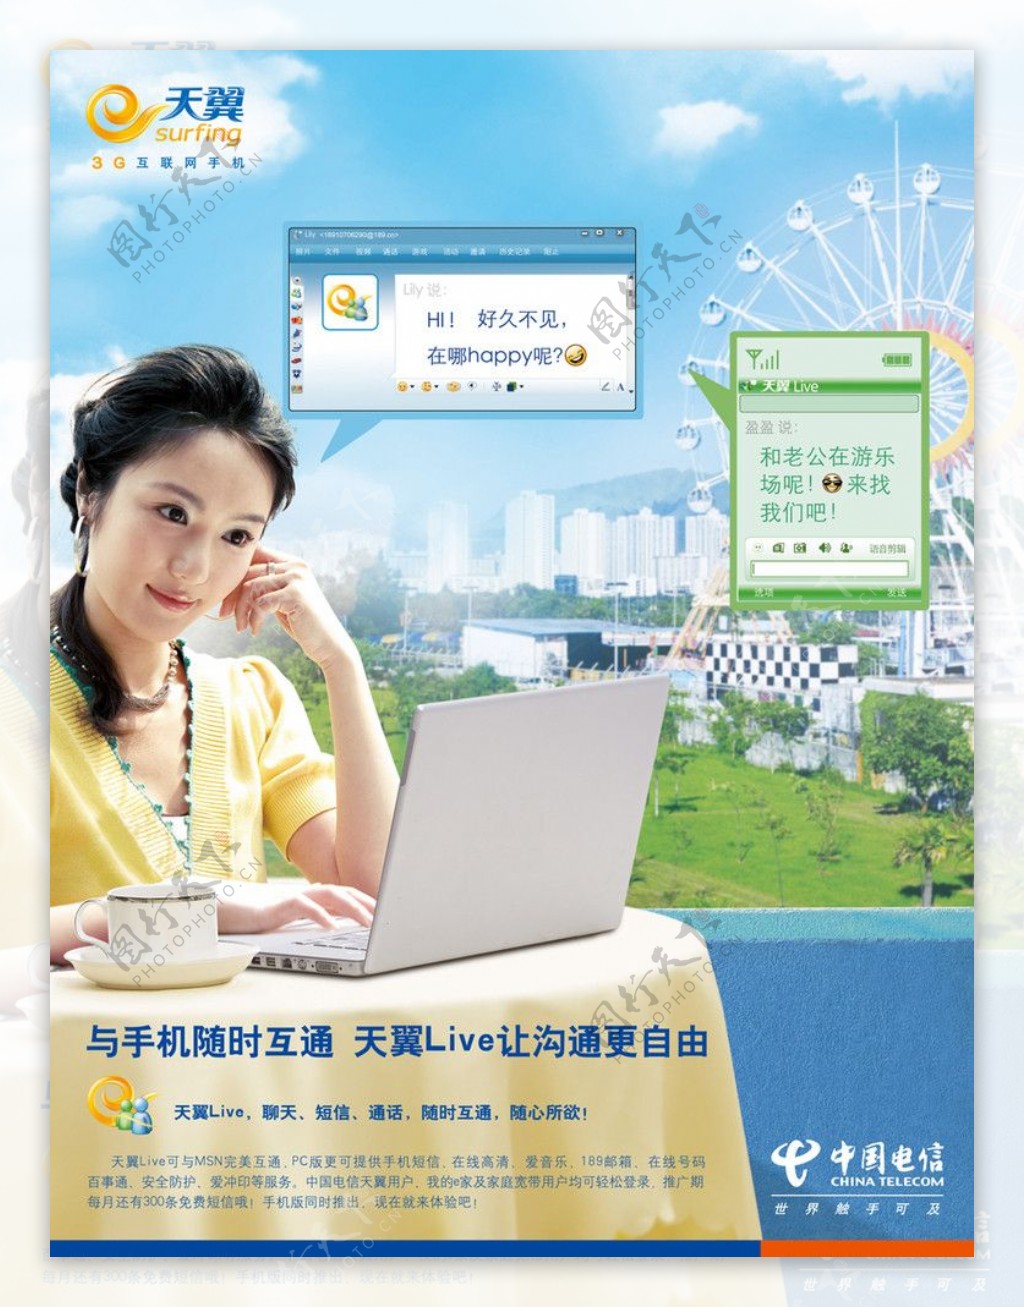 中国电信天翼3G游乐场篇广告牌画面图片